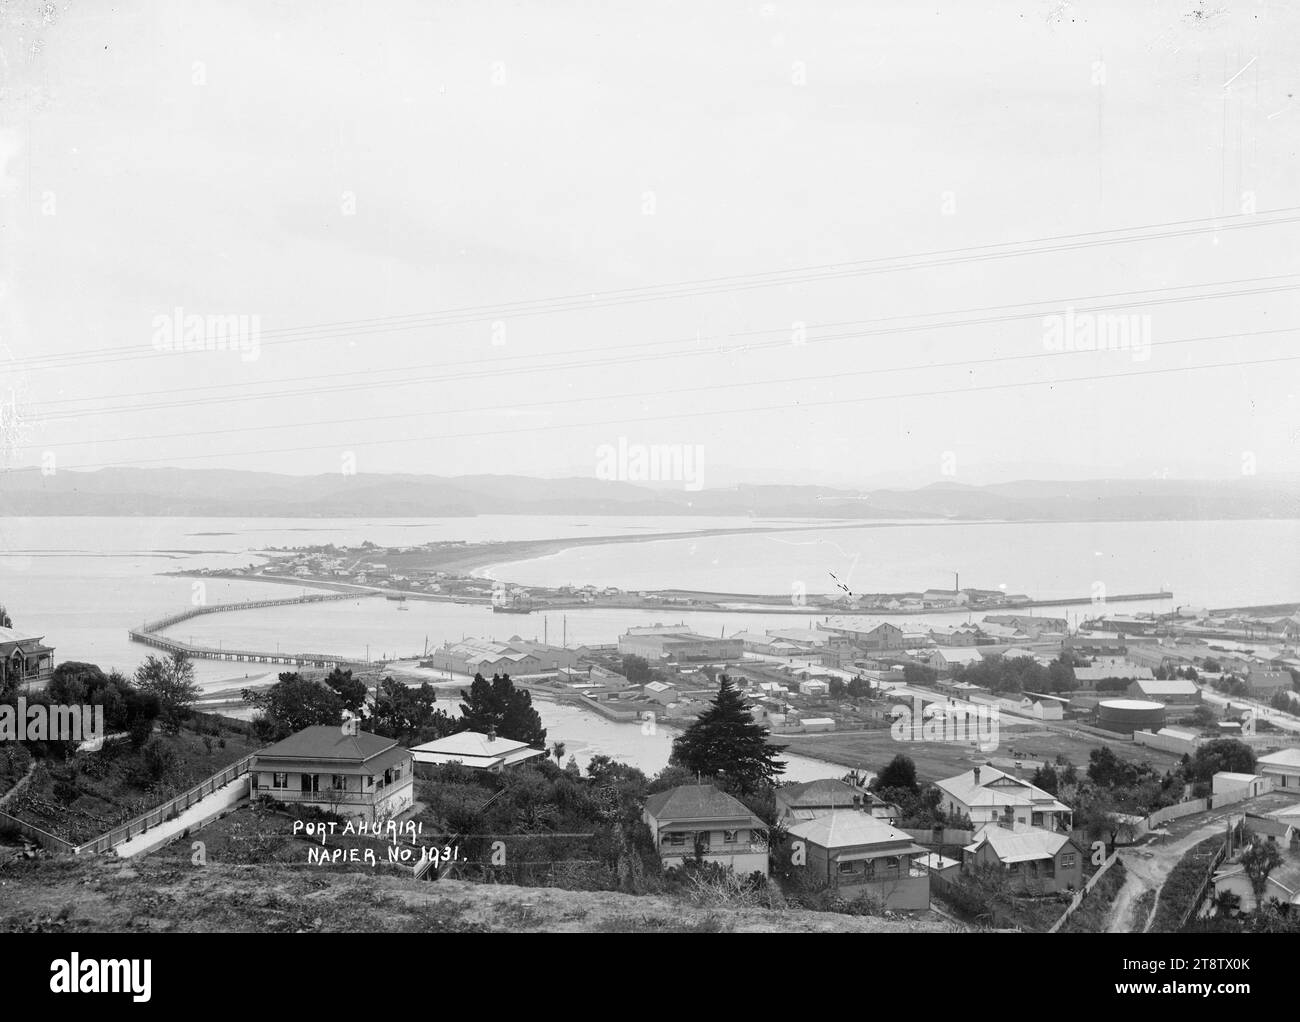 Port Ahuriri, Napier, vue de Port Ahuriri montrant des maisons au premier plan avec une zone industrielle derrière, des brise-lames et des quais, et la zone de la lagune qui a été plus tard remplie par le déplacement du sol lors du tremblement de terre de Napier en 1931 Banque D'Images